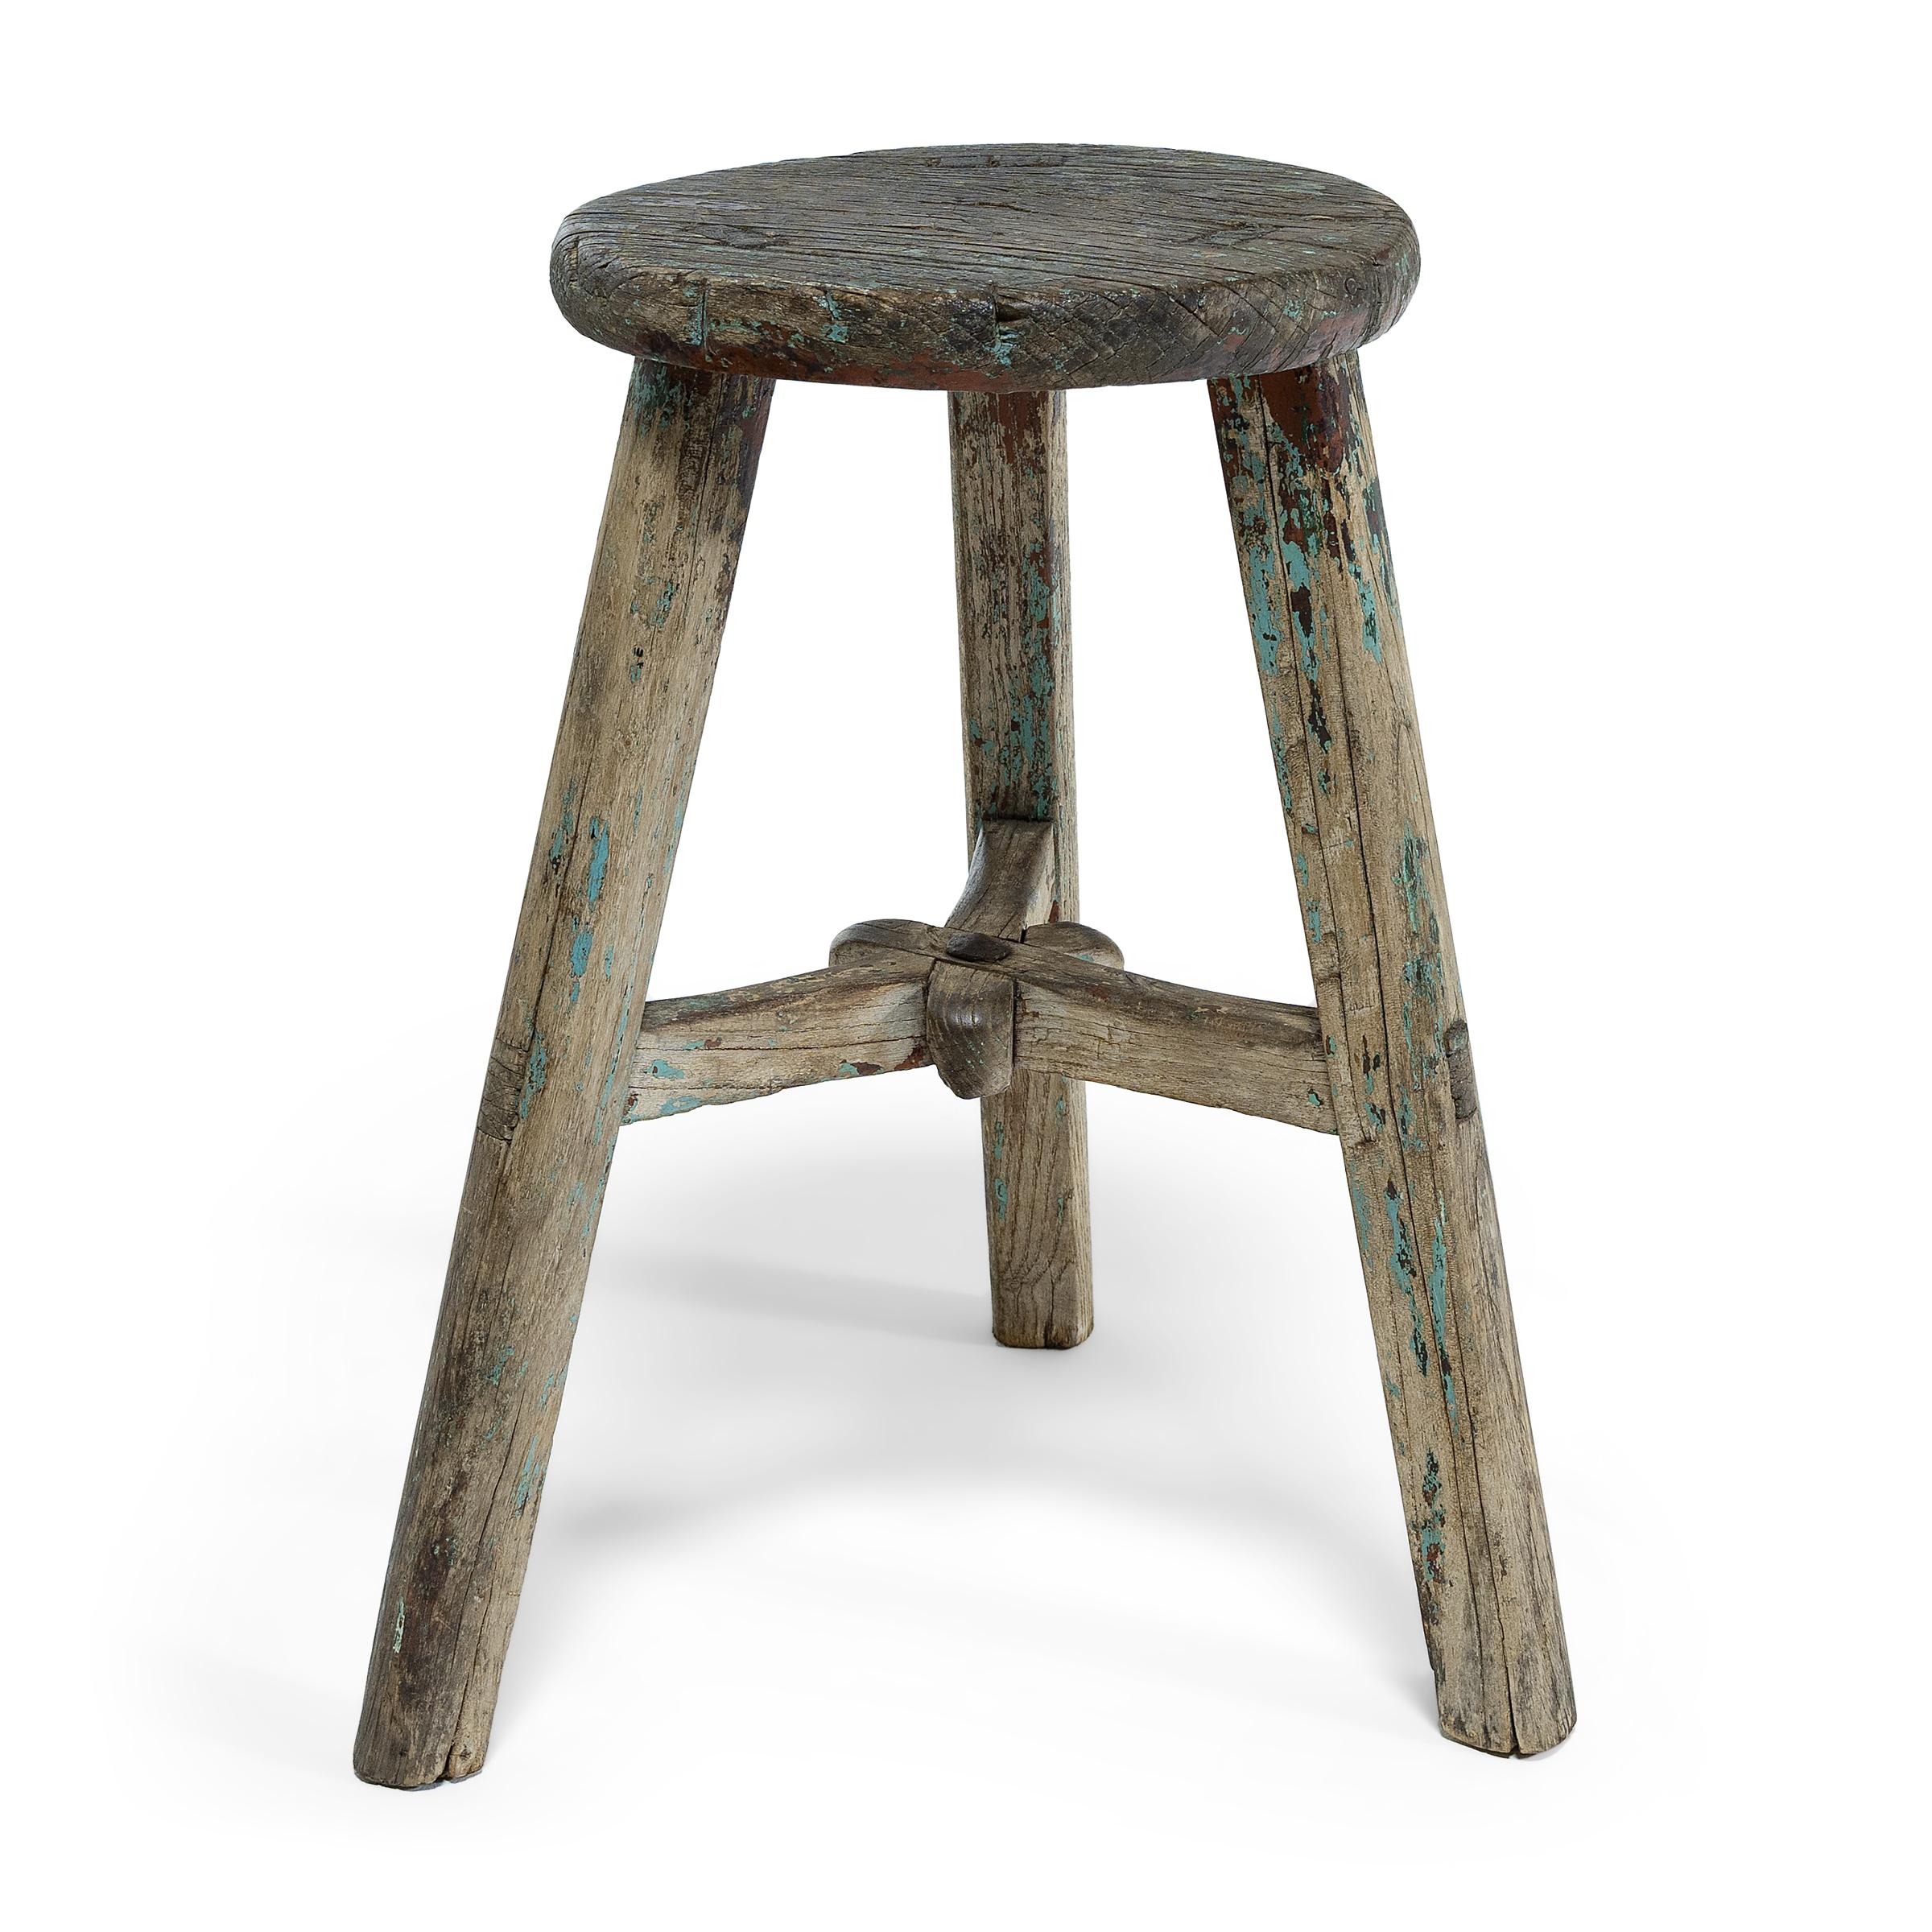 spotty stool